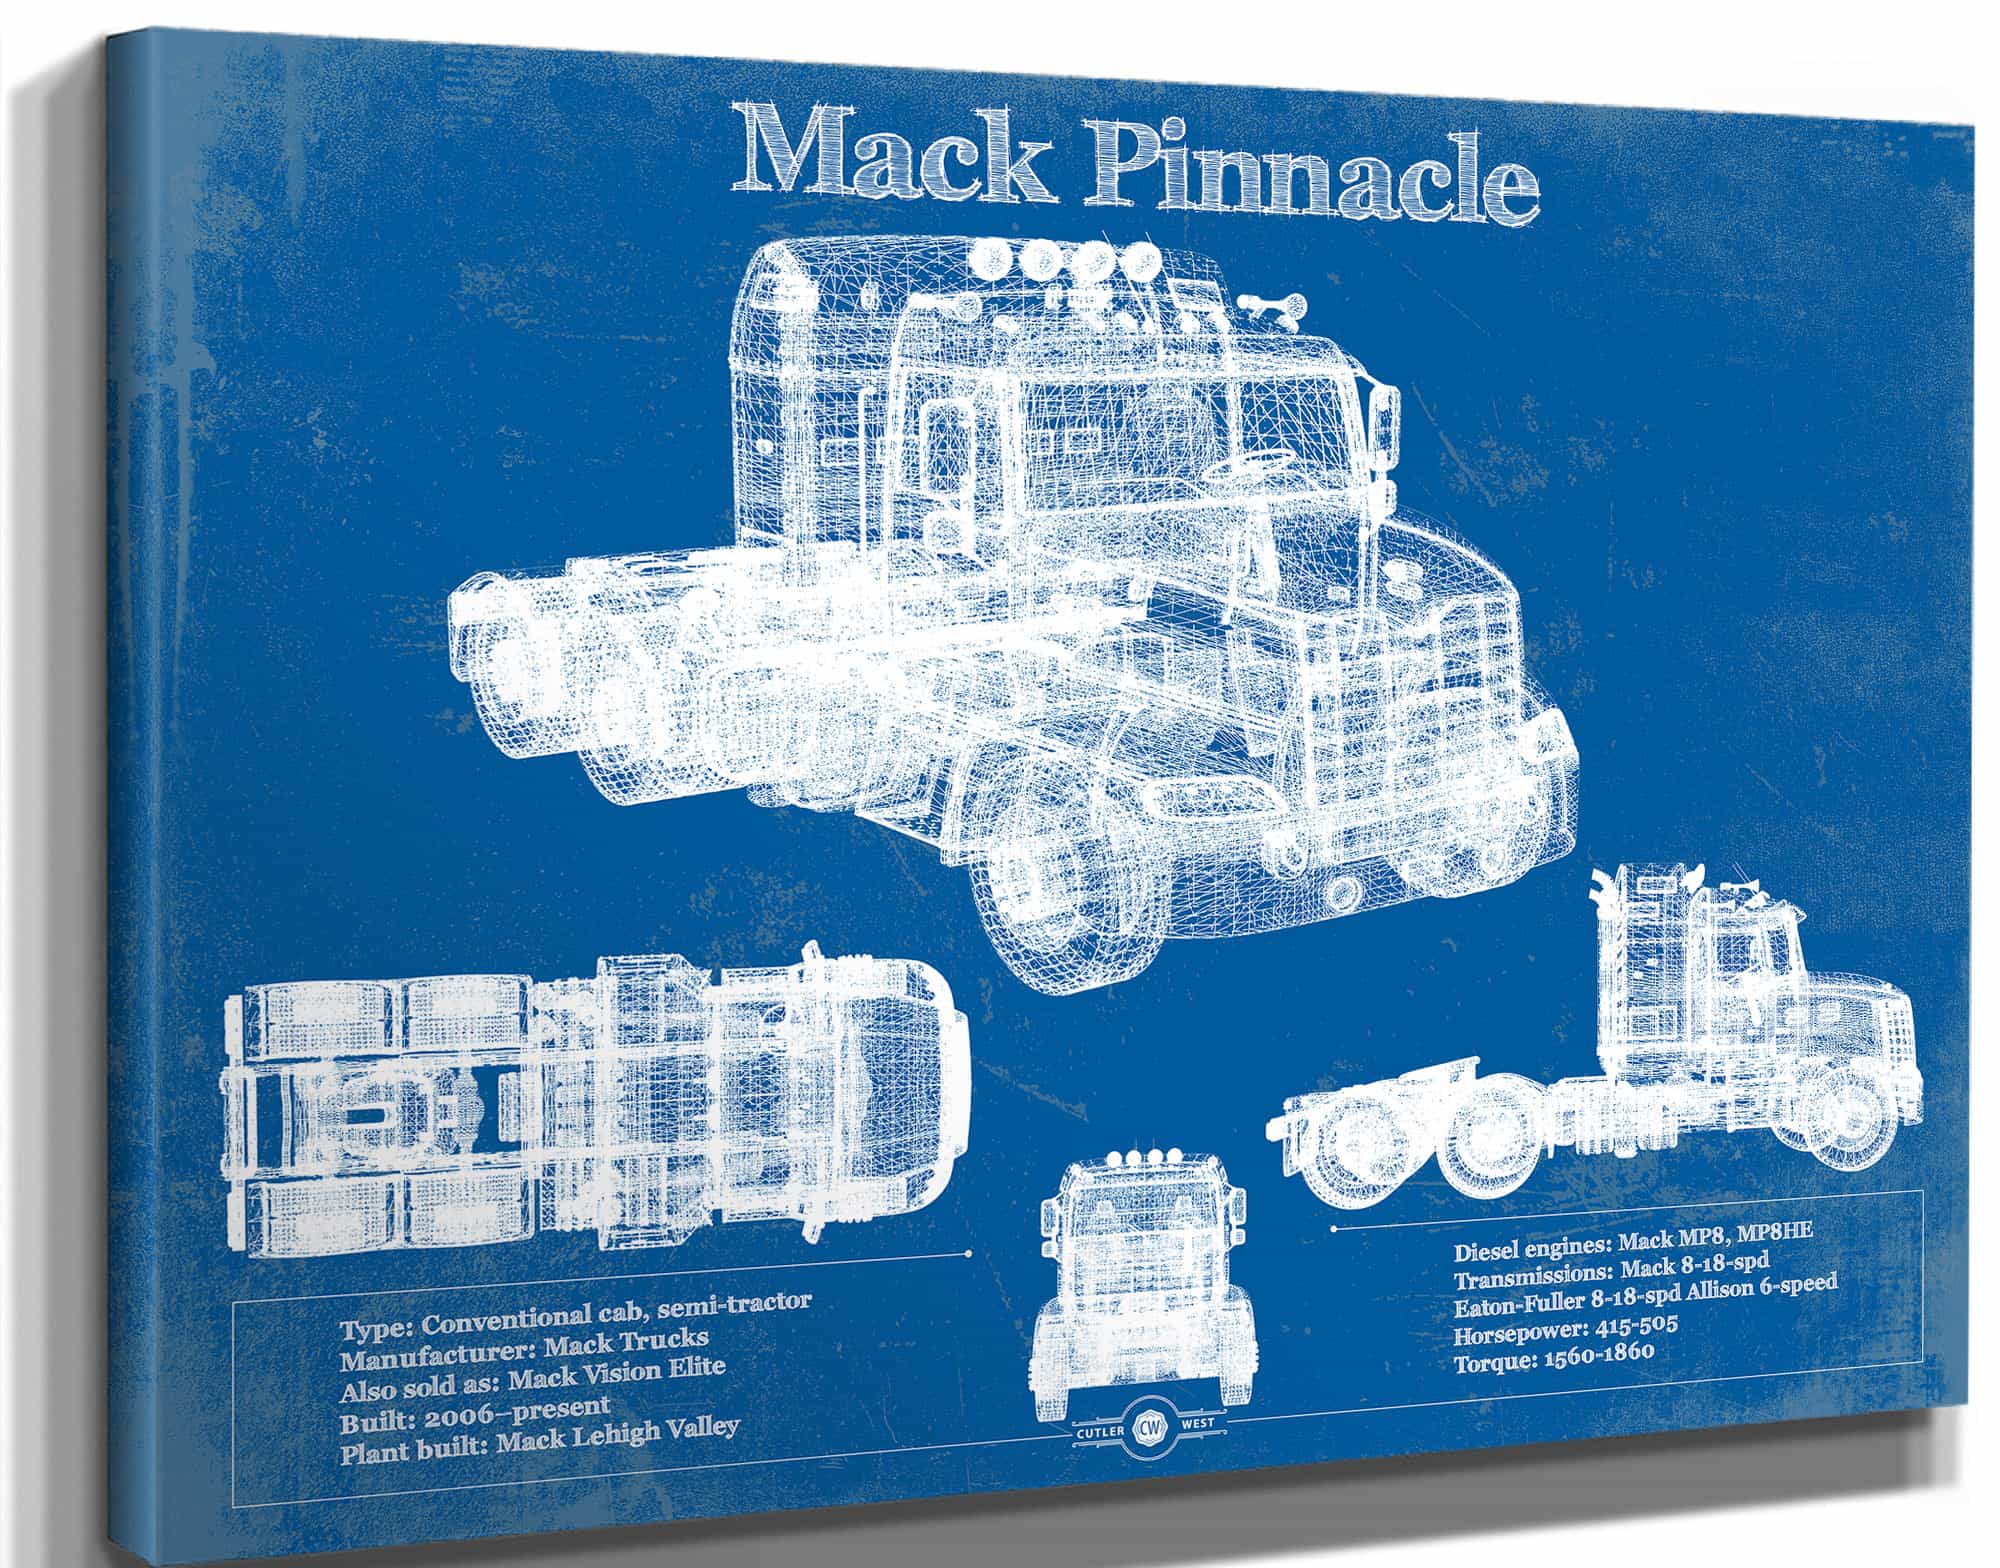 Mack Pinnacle Blueprint Vintage Truck Print